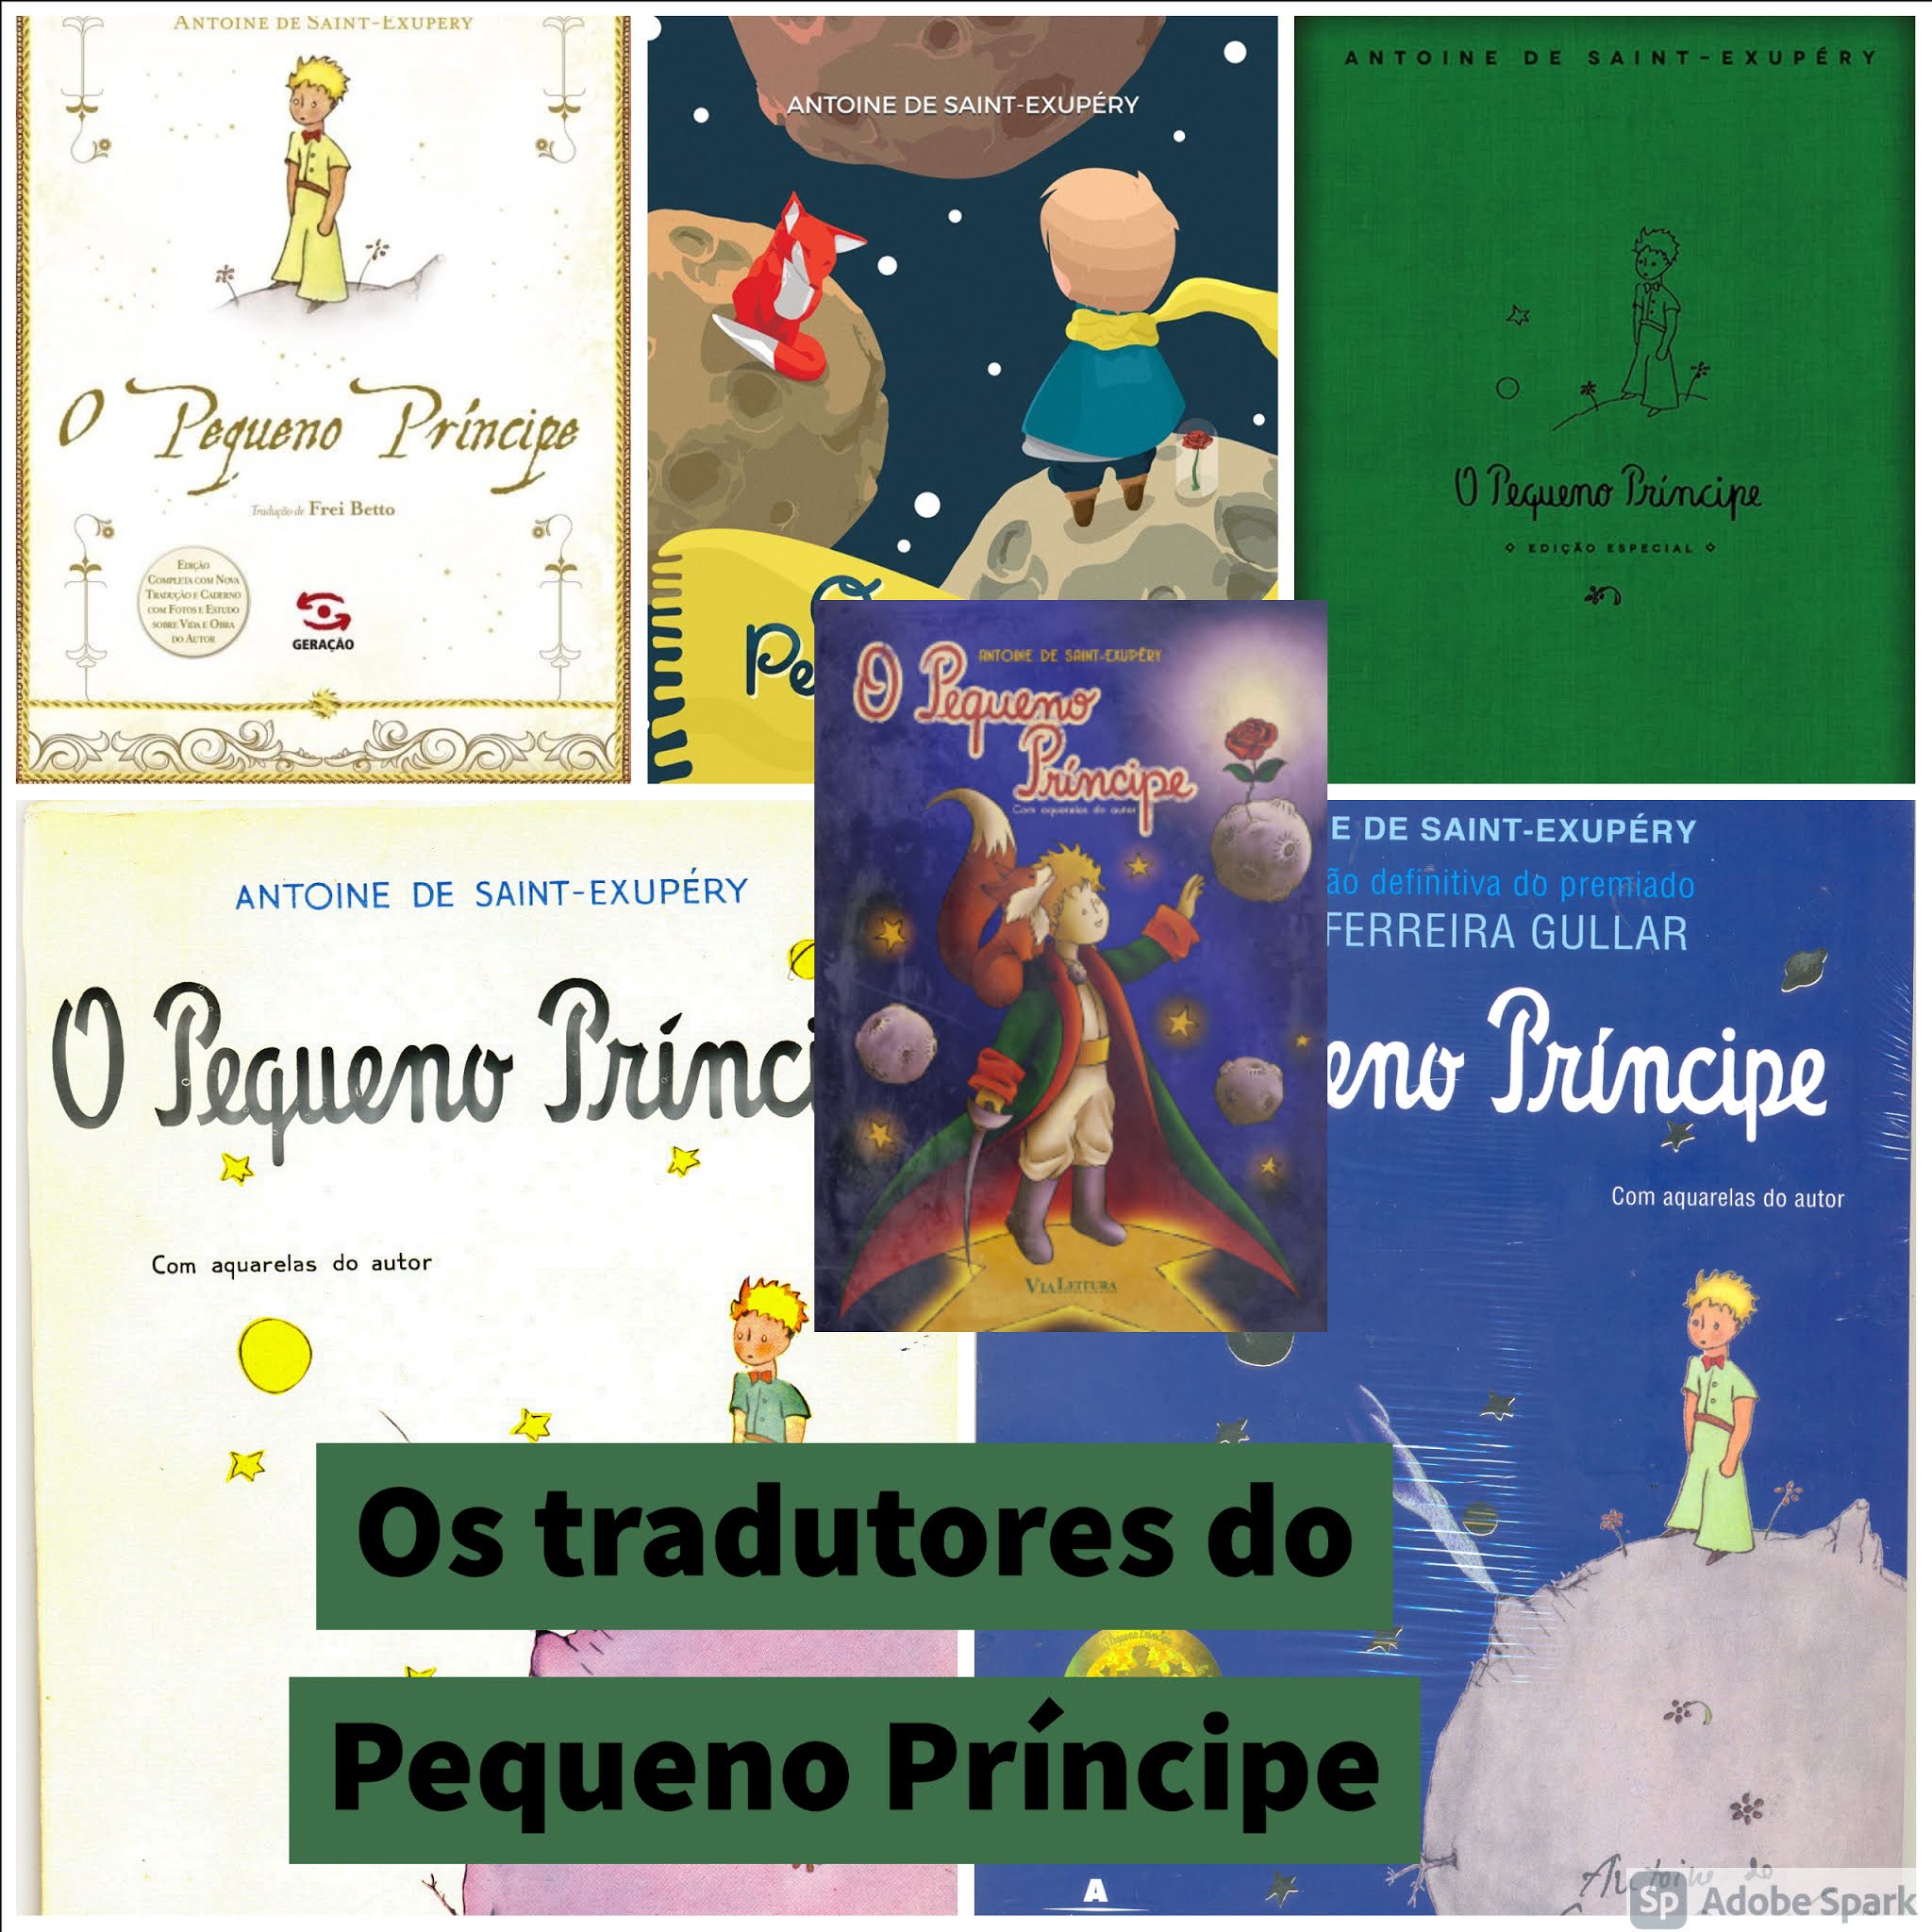 O Pequeno Príncipe” ganha tradução para o tupi – Jornal da USP